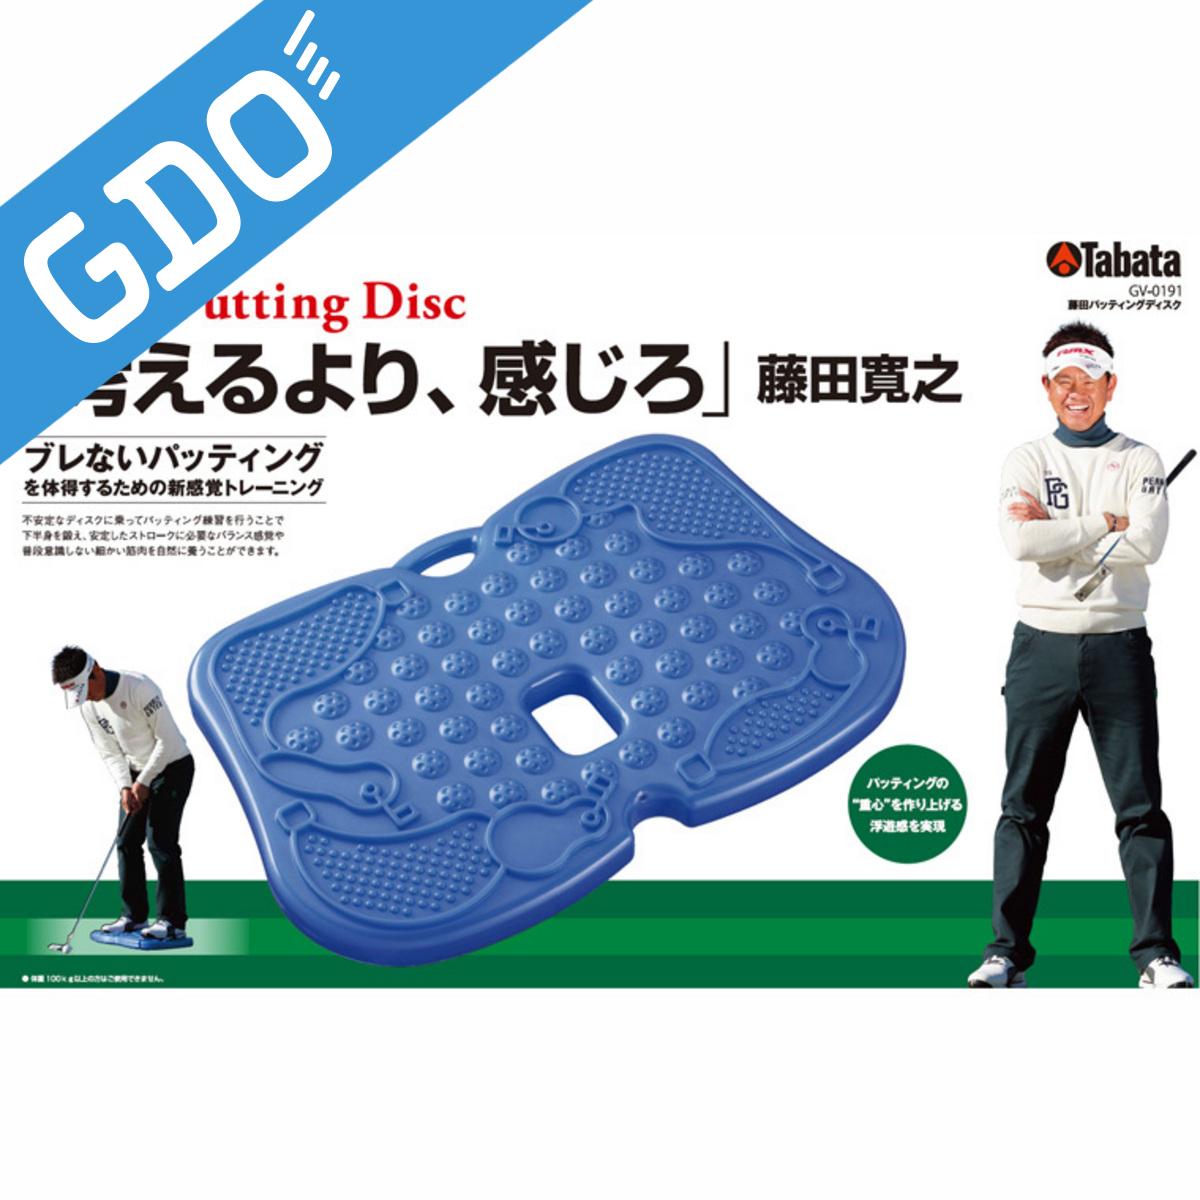 特売 ゴルフ トレーニング用具 GDO 公式ショップ GOLF タバタ GV0191 アプローチ兼用 Tabata 藤田パッティングディスク